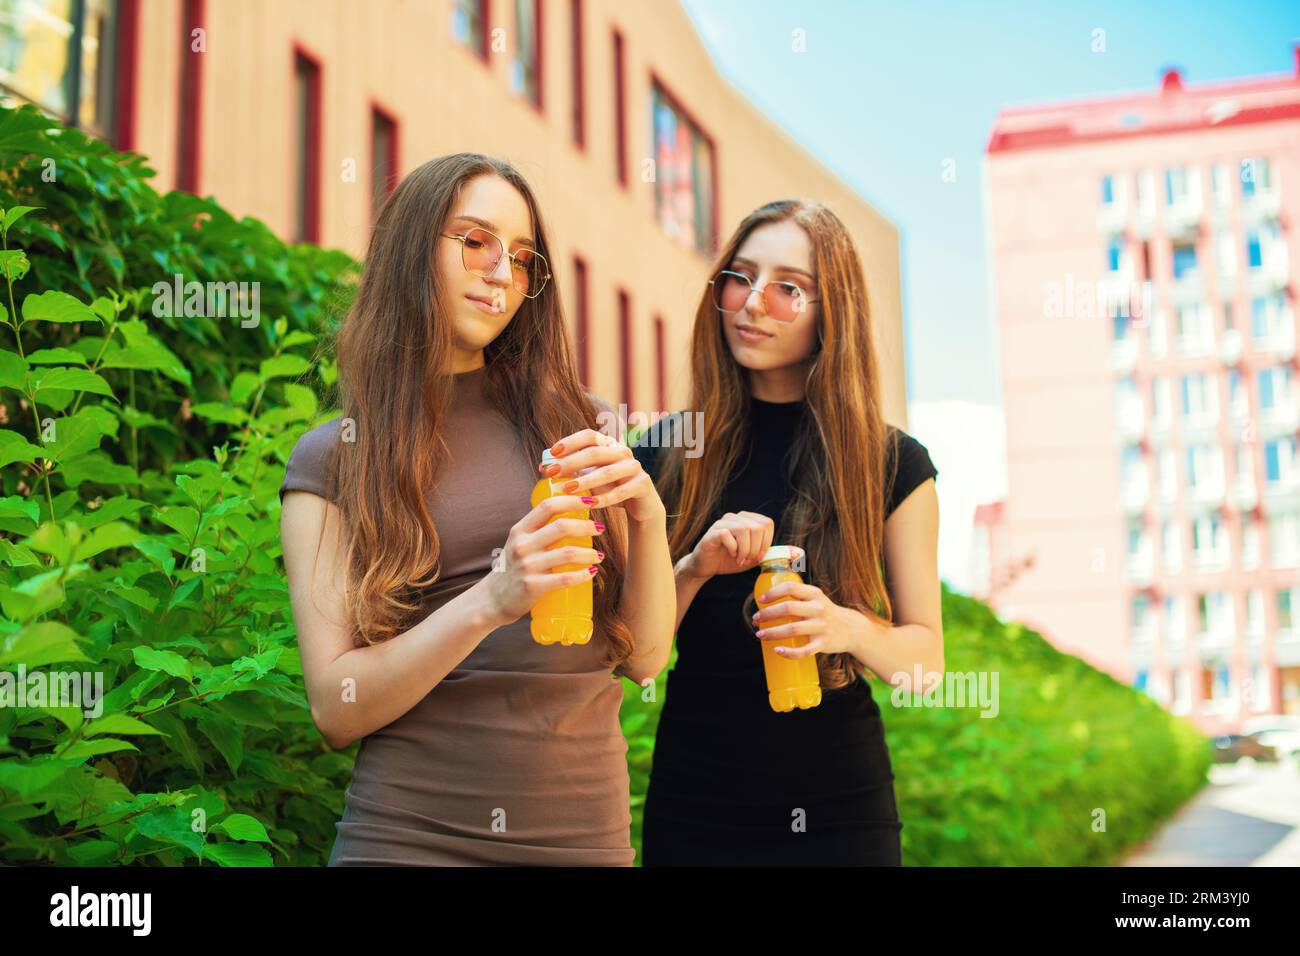 Jeunes sœurs jumelles mignonnes urbaines avec des lunettes de soleil fraîches ouvrant une bouteille orange de jus de citron debout dans le fond de la rue de la ville Banque D'Images